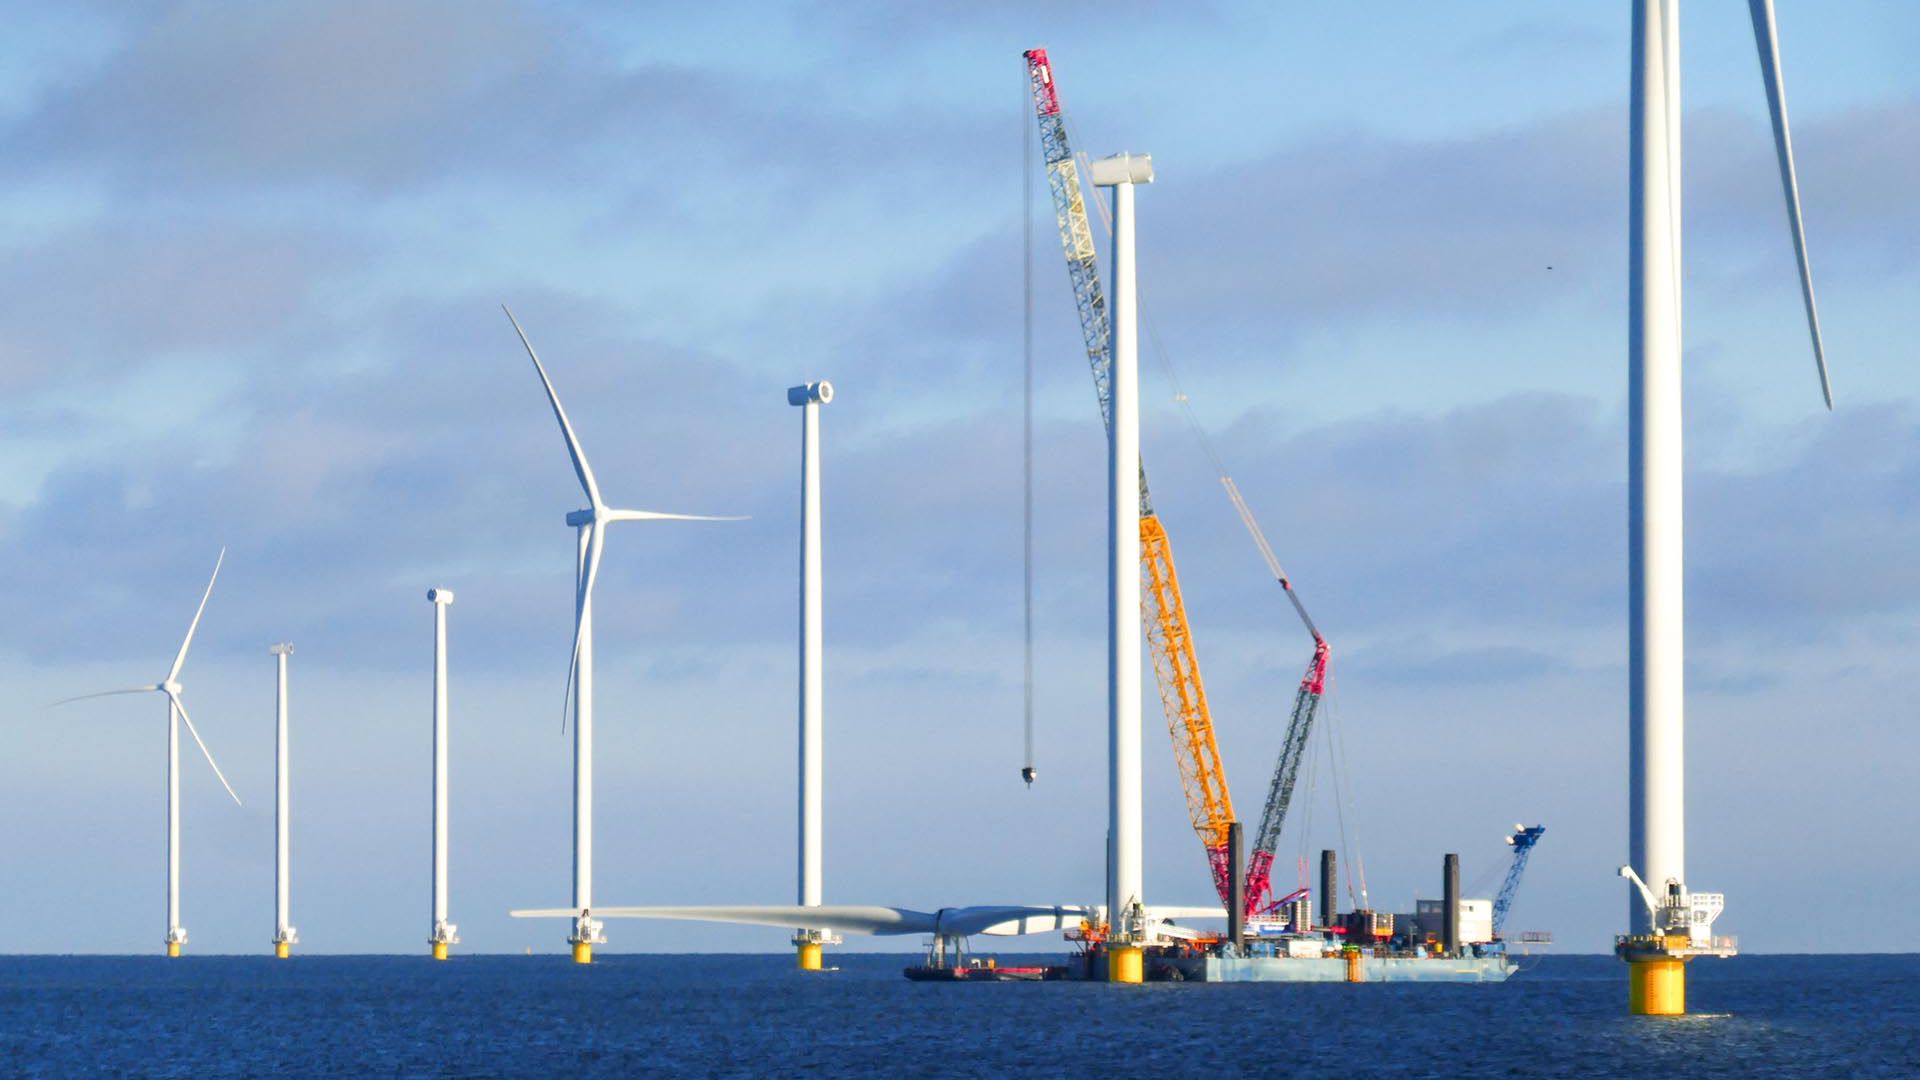 建造海上风电场-荷兰海上风力涡轮机(markermeer)。起重机船正在准备吊起风力发电机的转子。阳光明媚的天气和大气的心情。